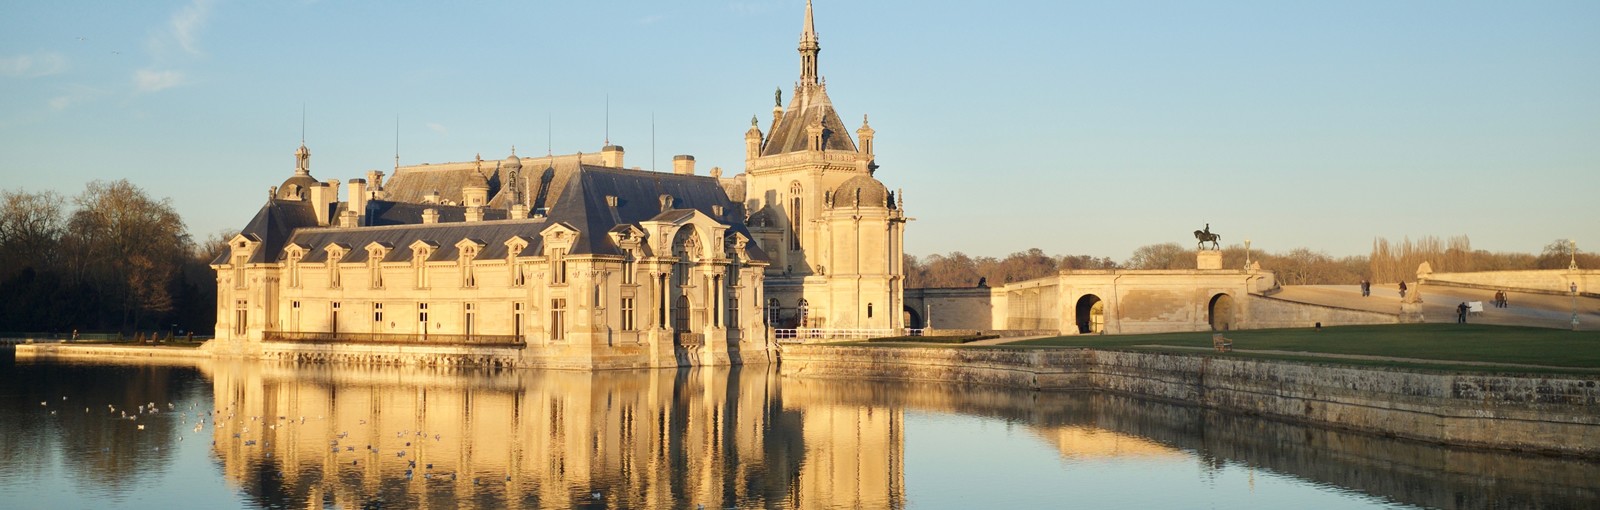 Tours Chantilly - Medio-días - Excursiones desde París